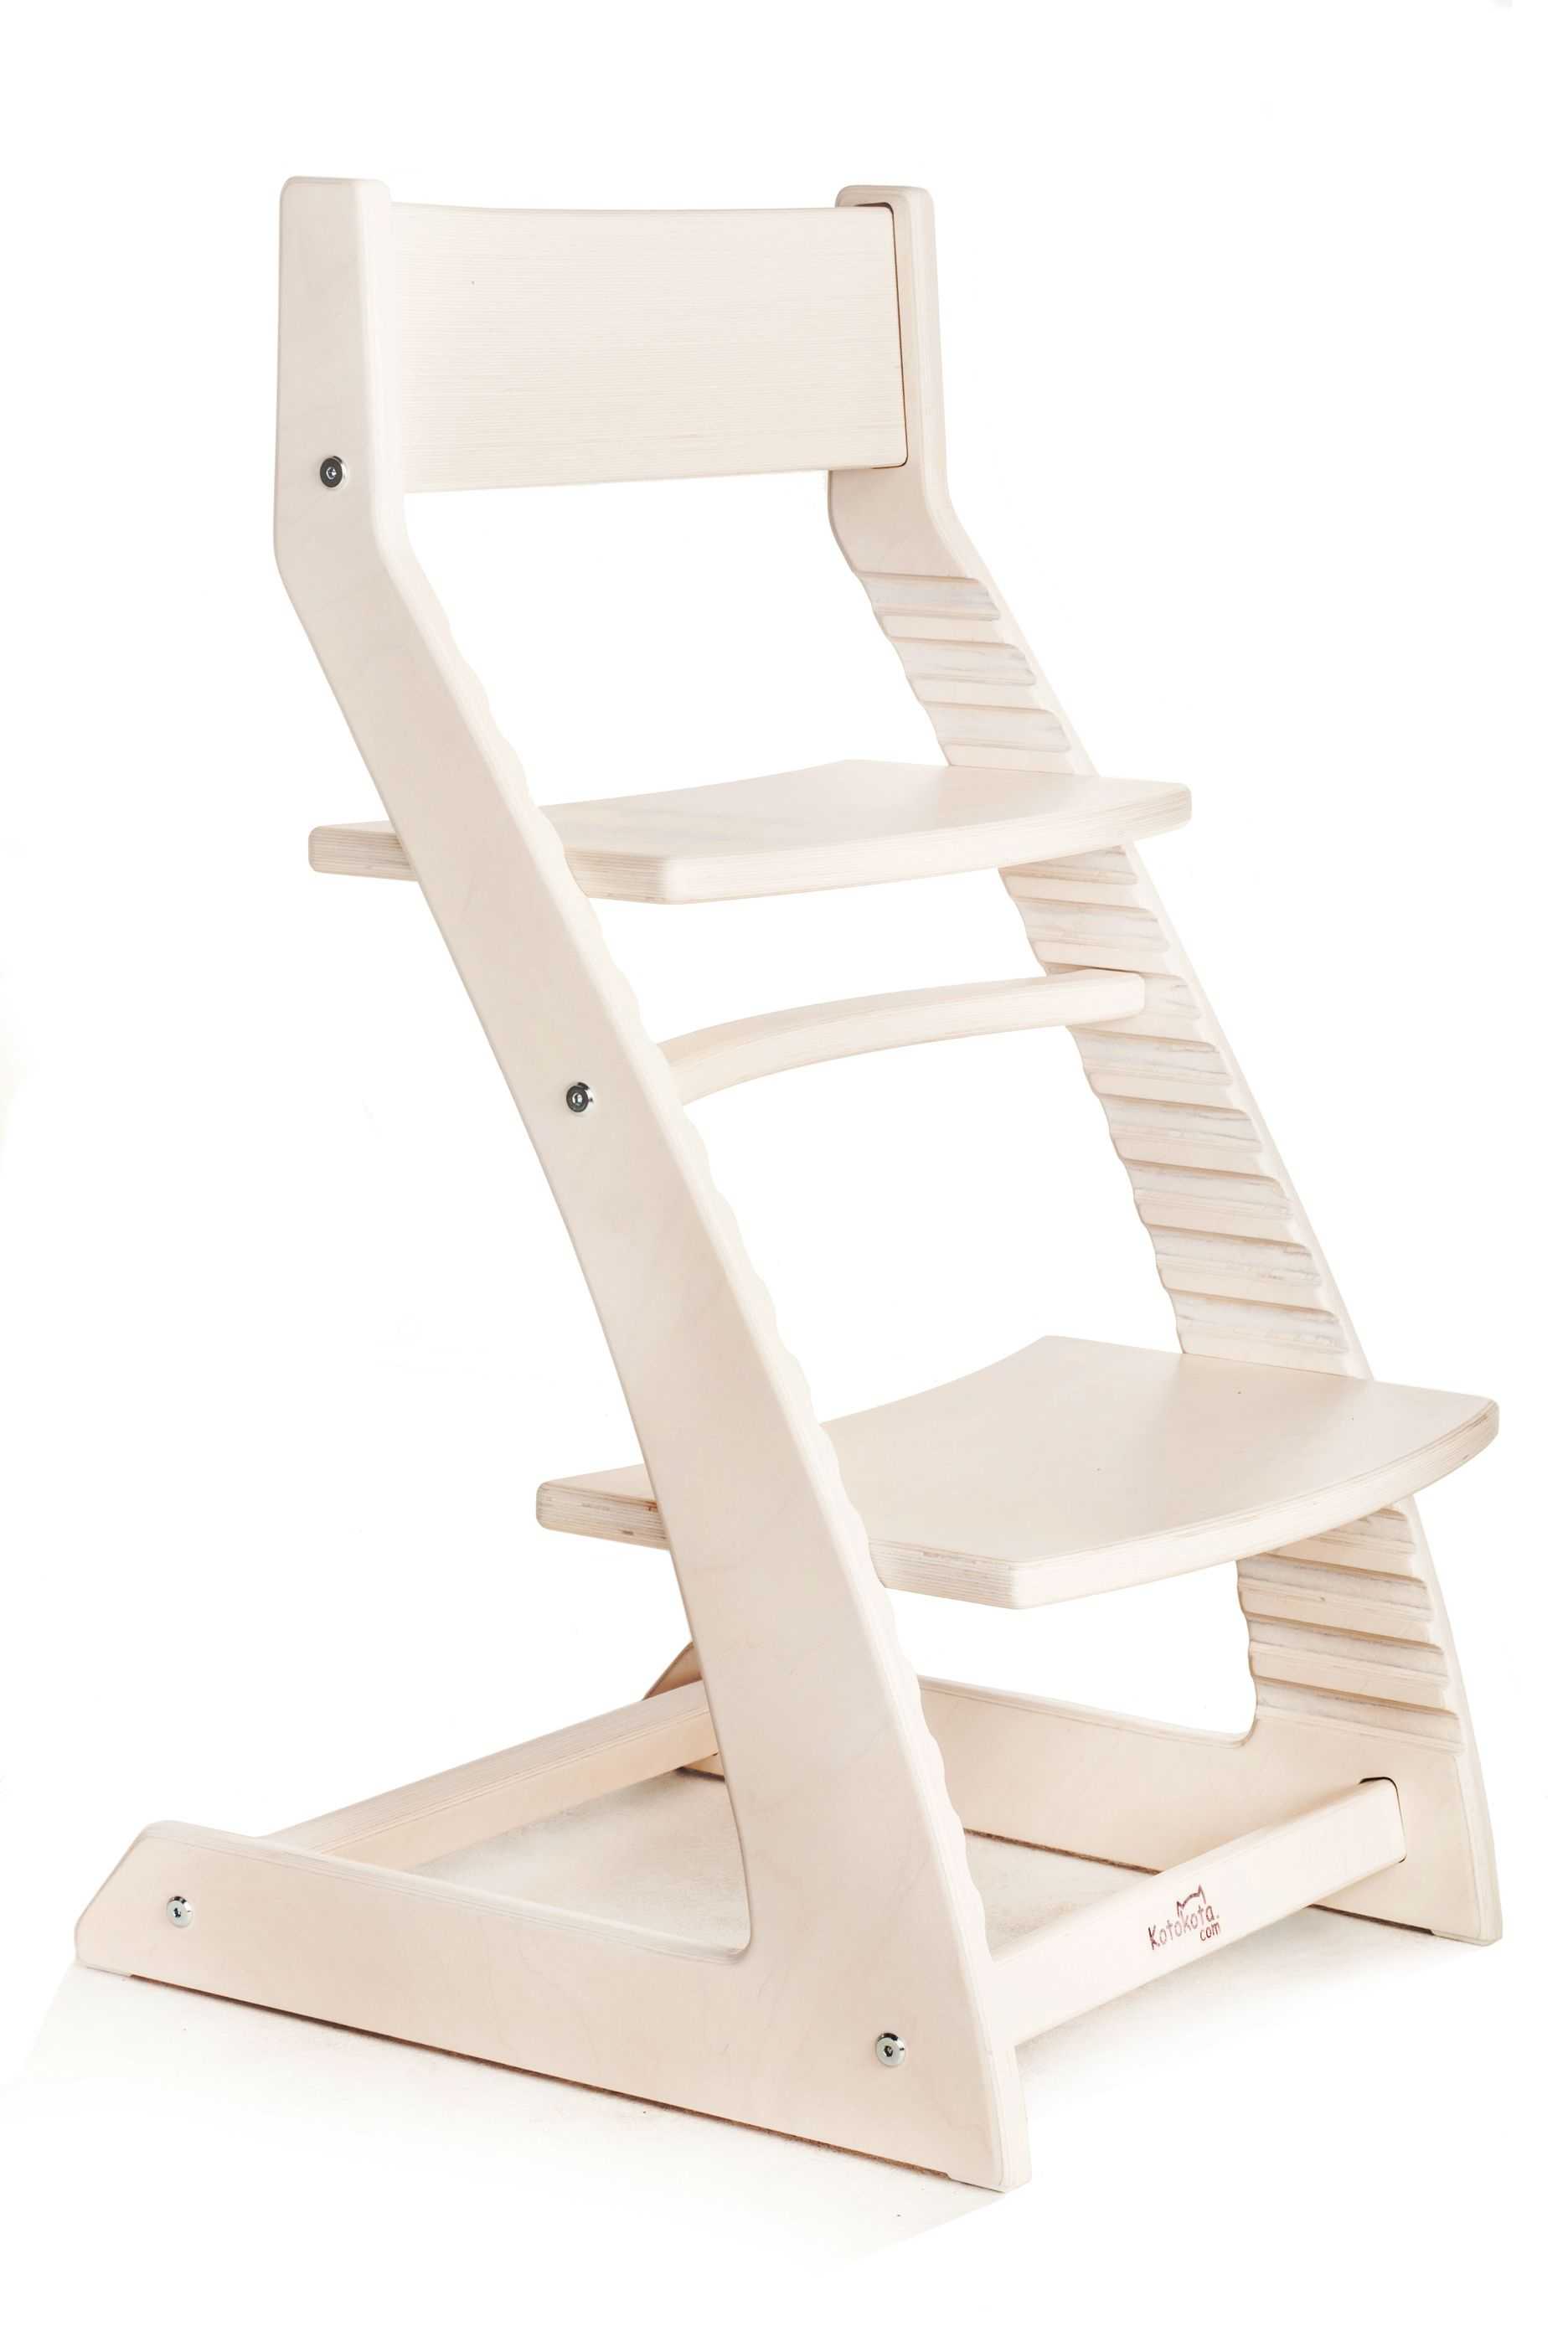 Стул для школьника, регулируемый по высоте: детский ортопедический стул-трансформер